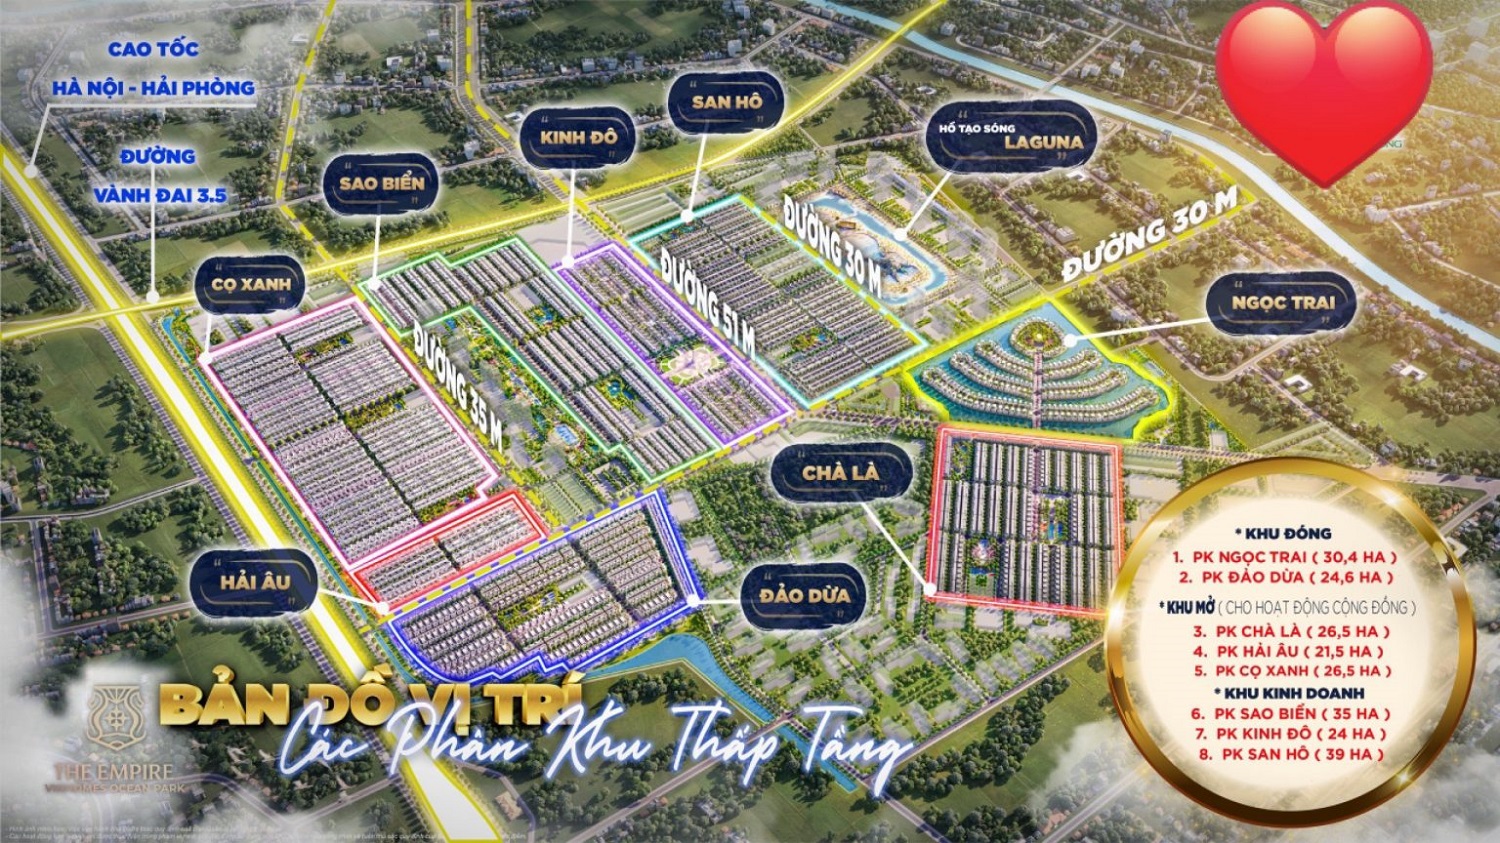 The Empire Vinhomes Ocean Park là khu đô thị phức hợp đầu tiên mang thương hiệu Vinhomes tại Hưng Yên. The Empire là tên gọi được lấy cảm hứng từ ý tưởng về một không gian sống thượng lưu